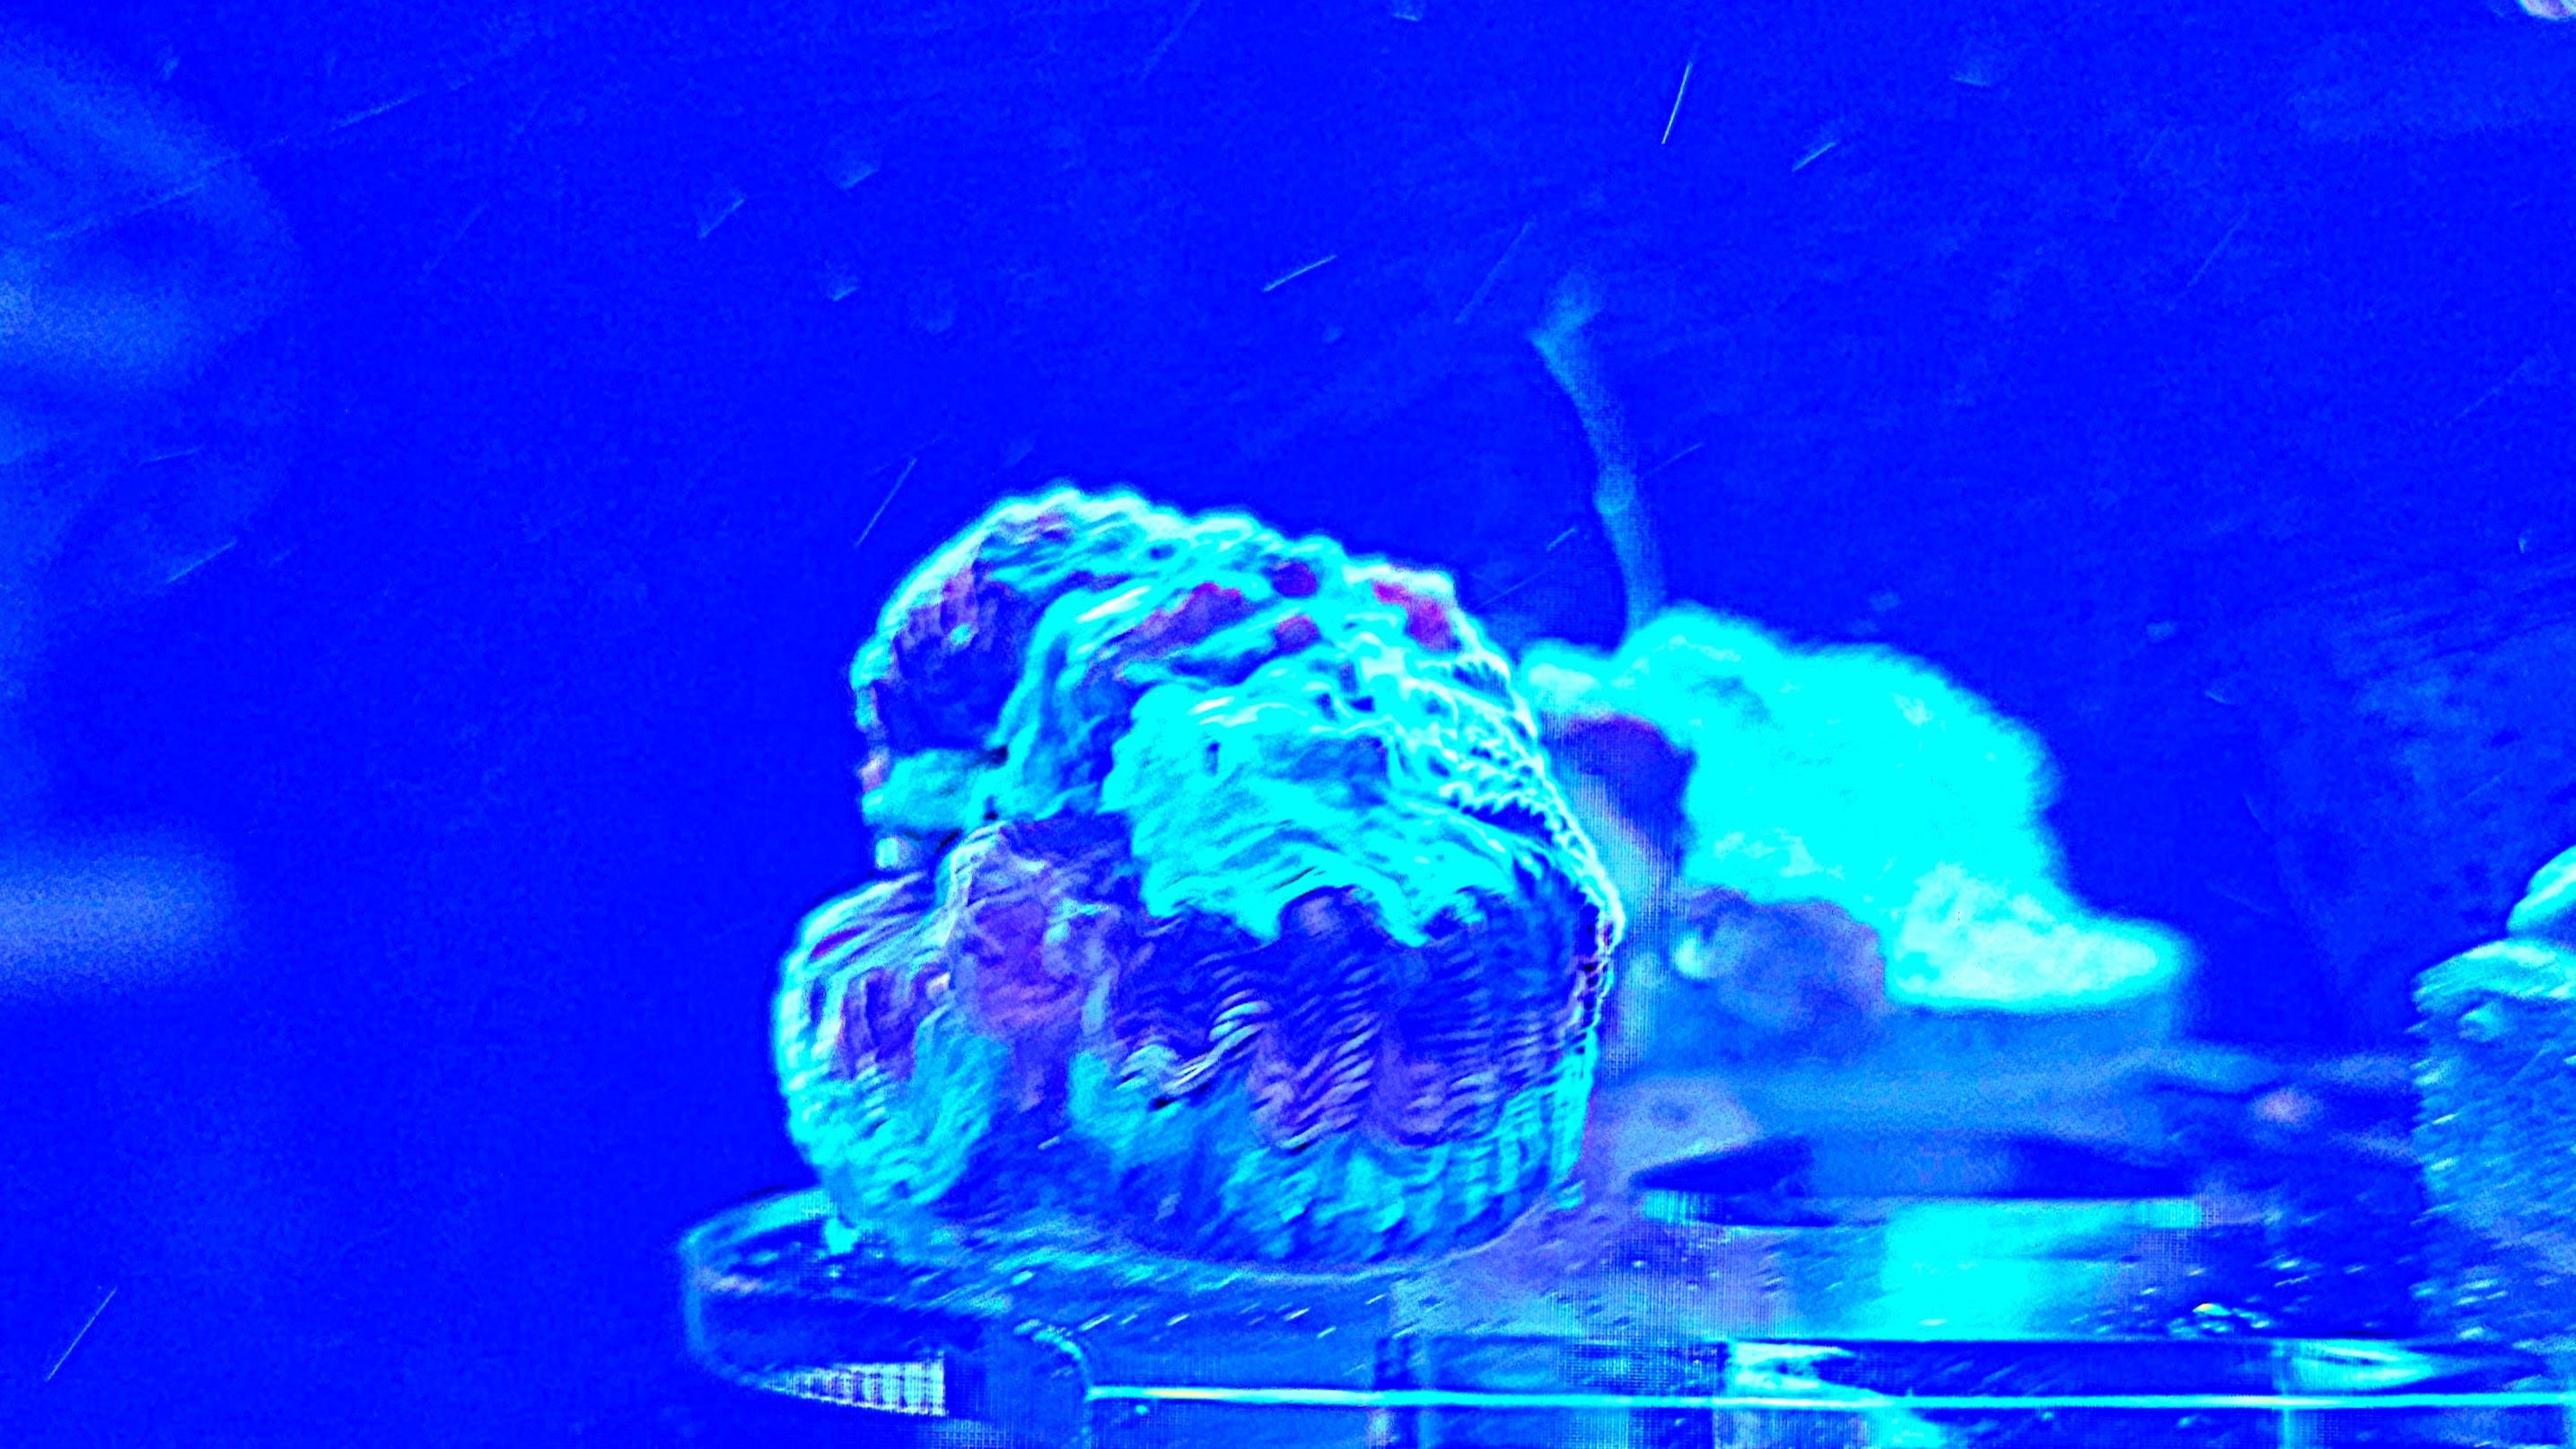 Zdjęcie koralowca zniszczonego przez dziwne oświetlenie